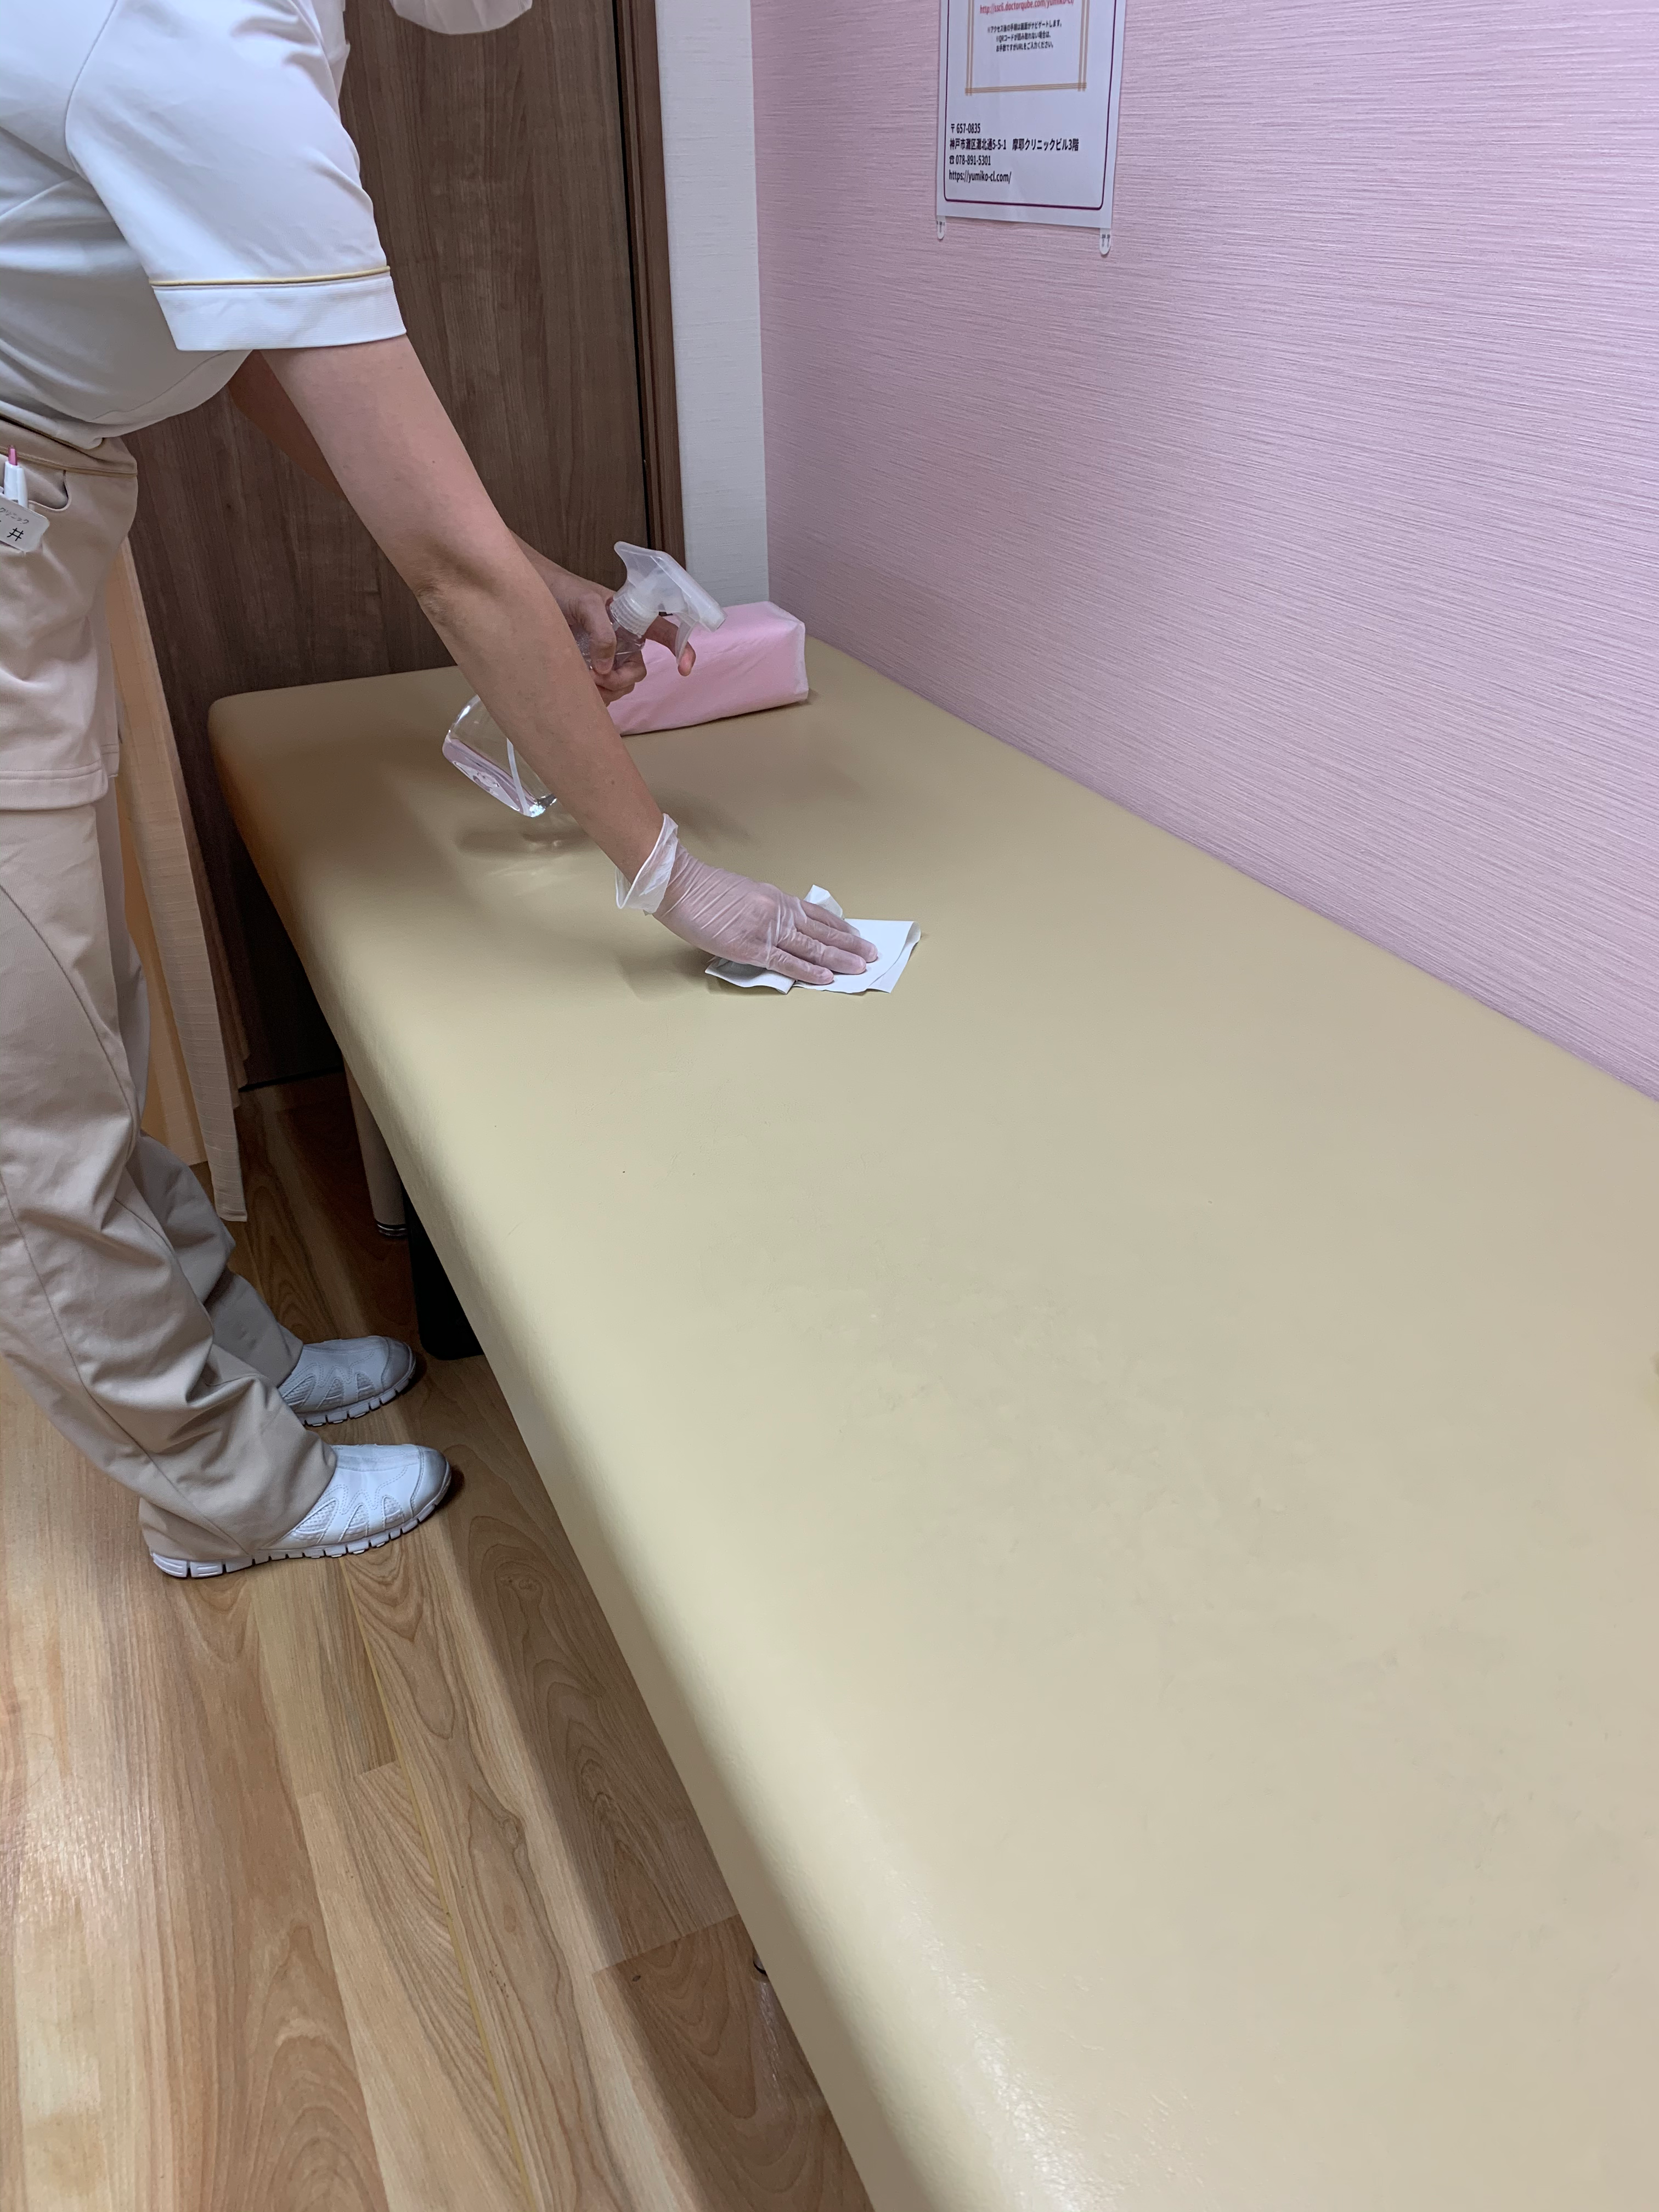 当院での対策 由美子クリニック 神戸市灘区 摩耶駅の肛門外科 女性医師